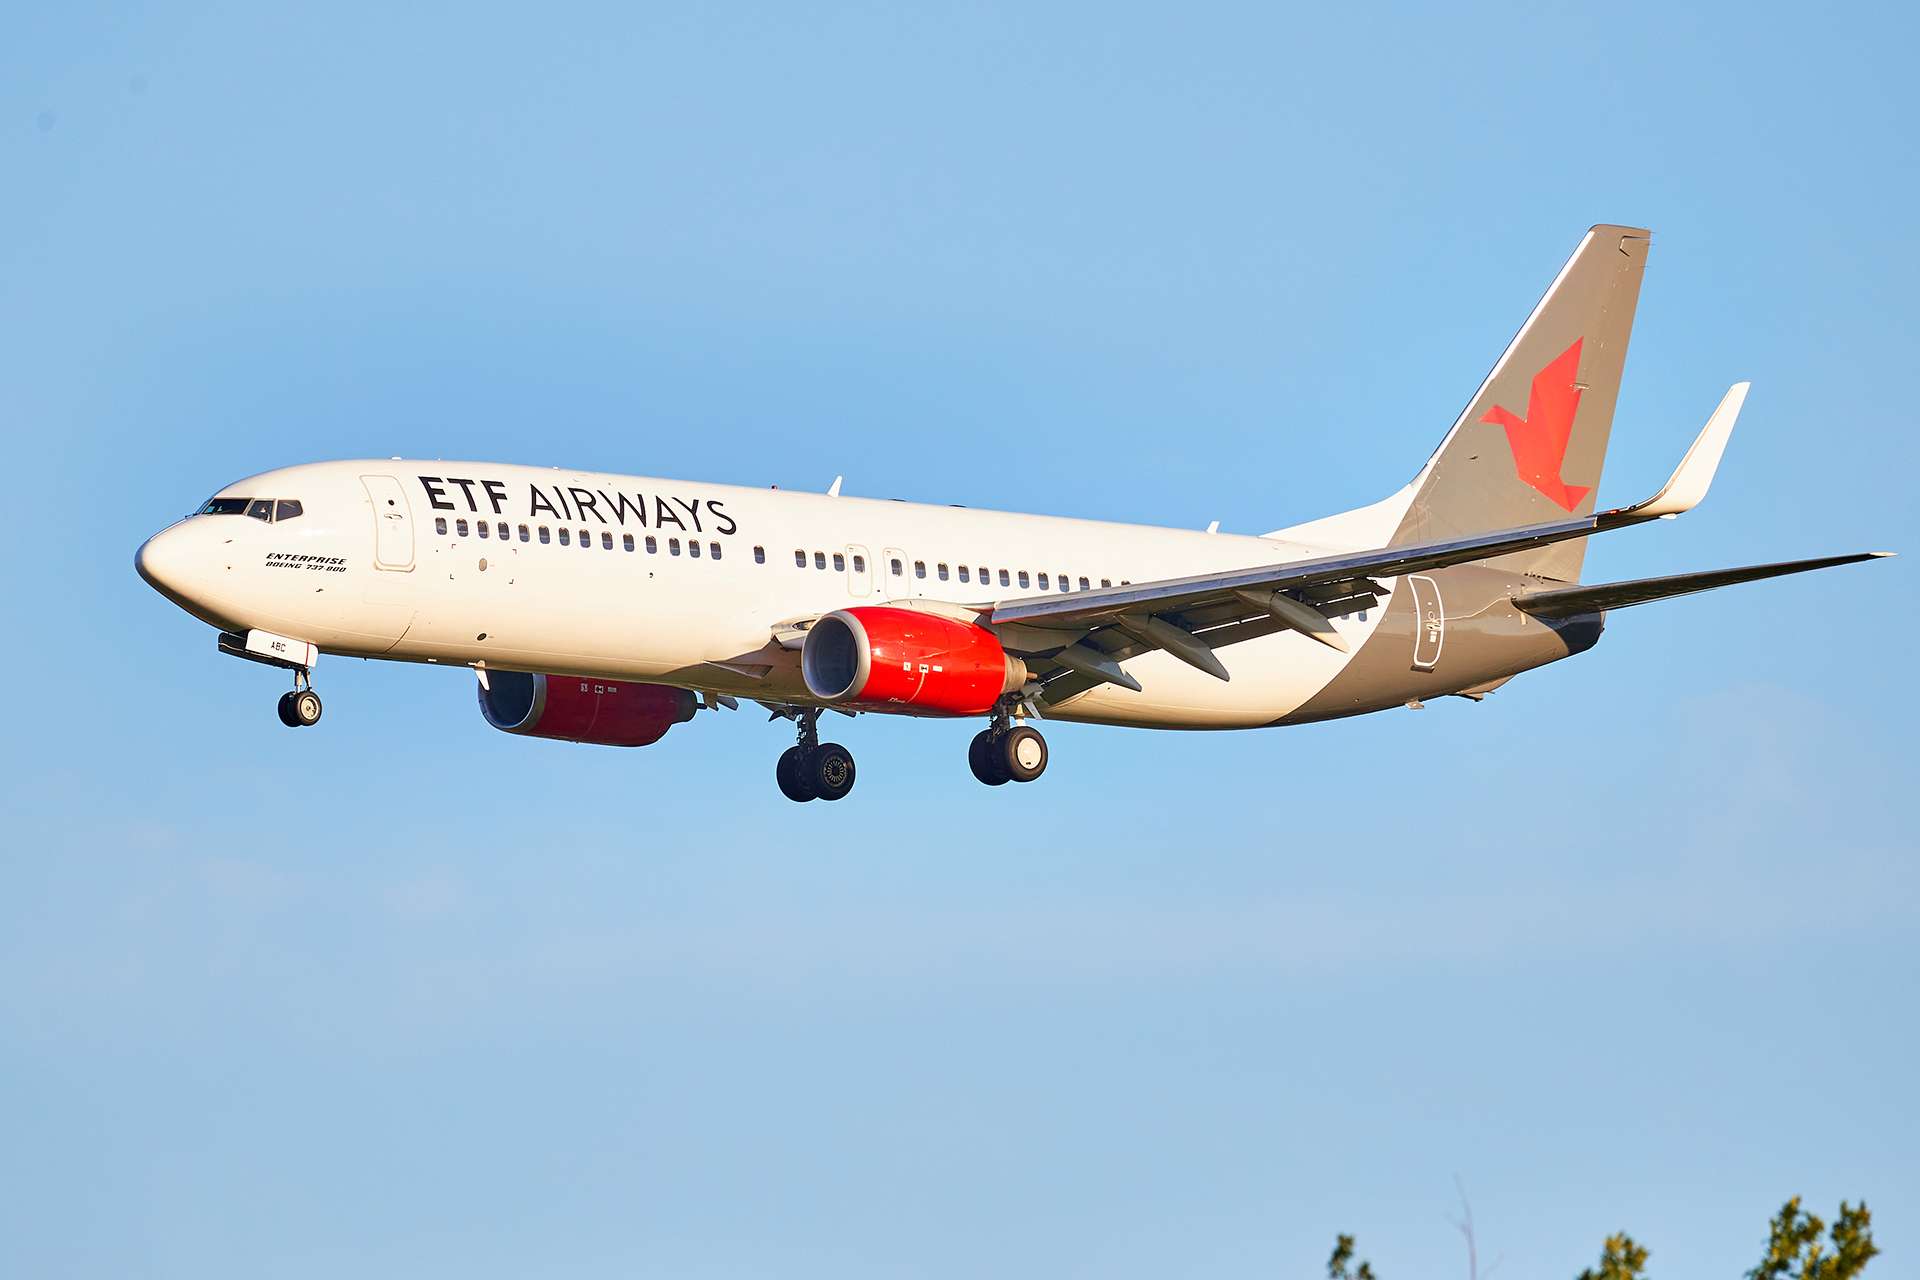 [29/05/2022] Boeing 737-800 (9A-ABC] ETF Airways GPyVNb-GRX-0218